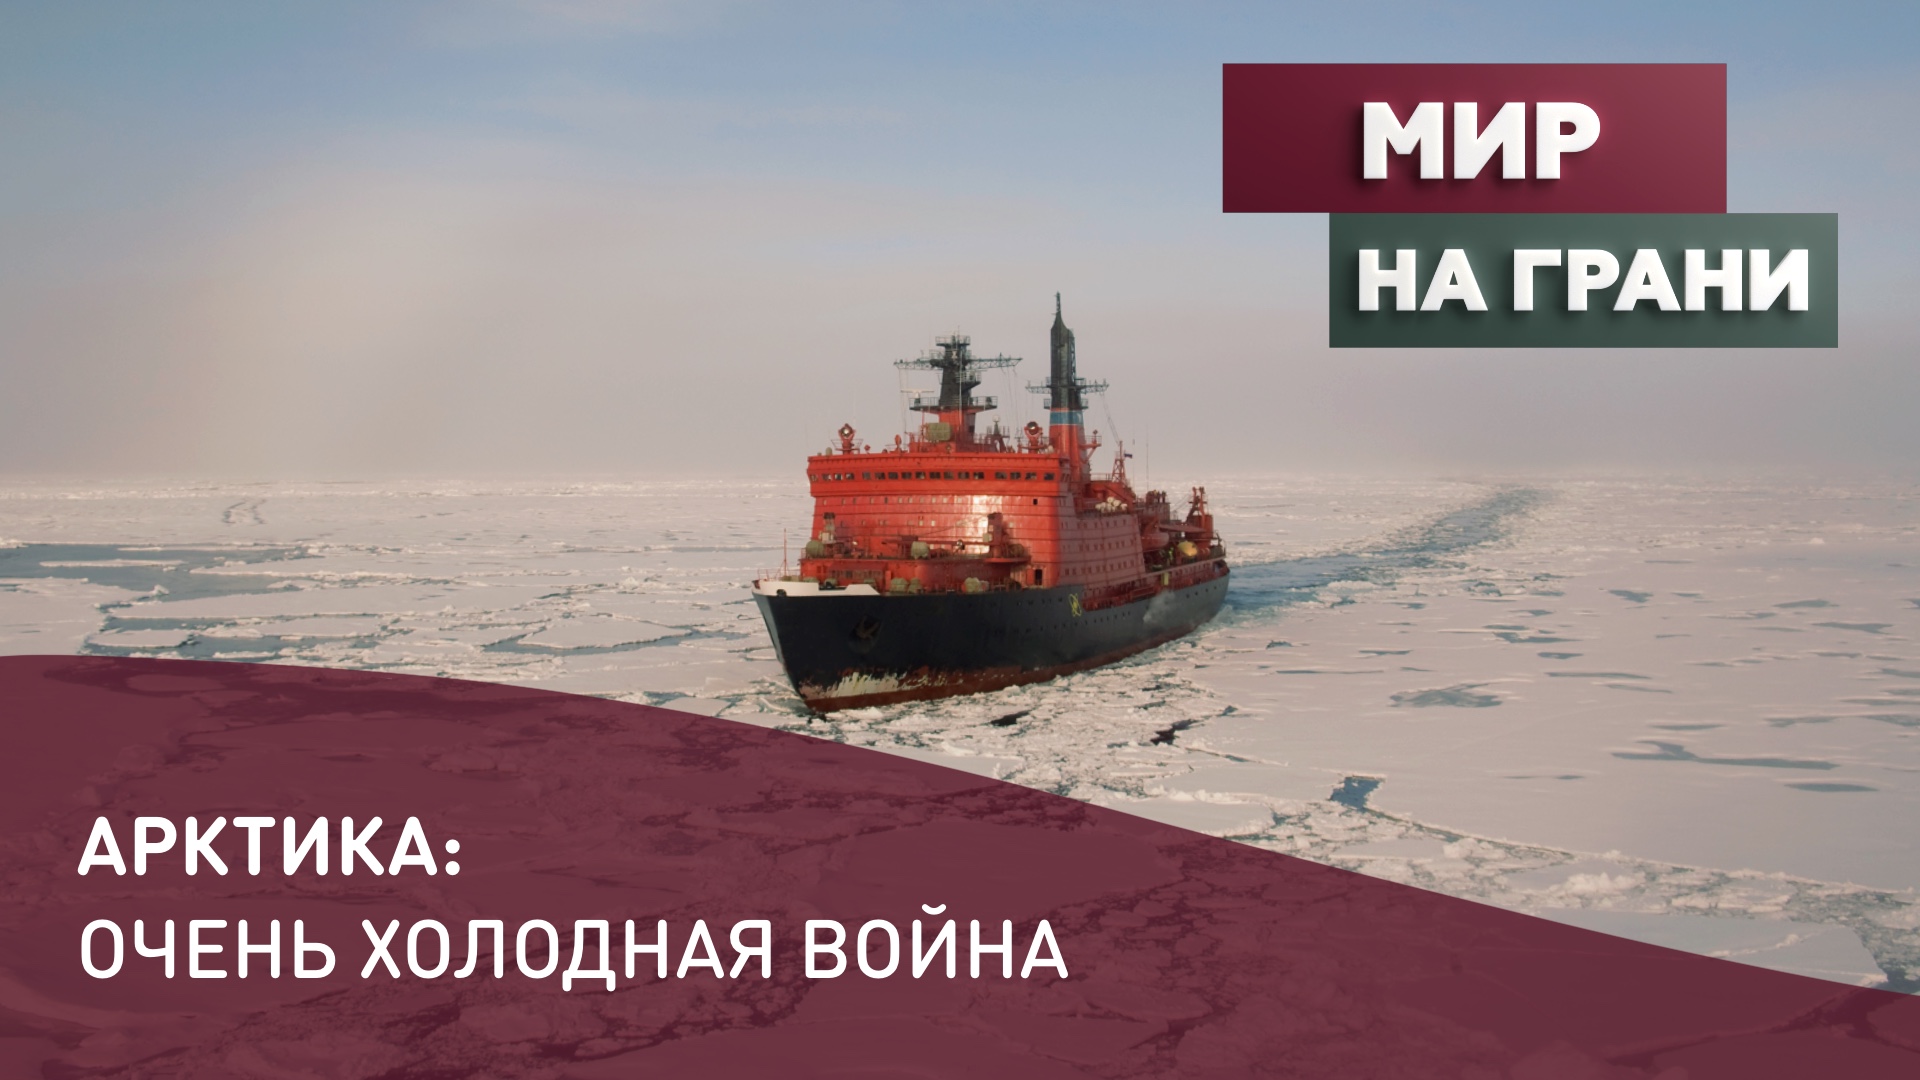 Арктика: очень холодная война